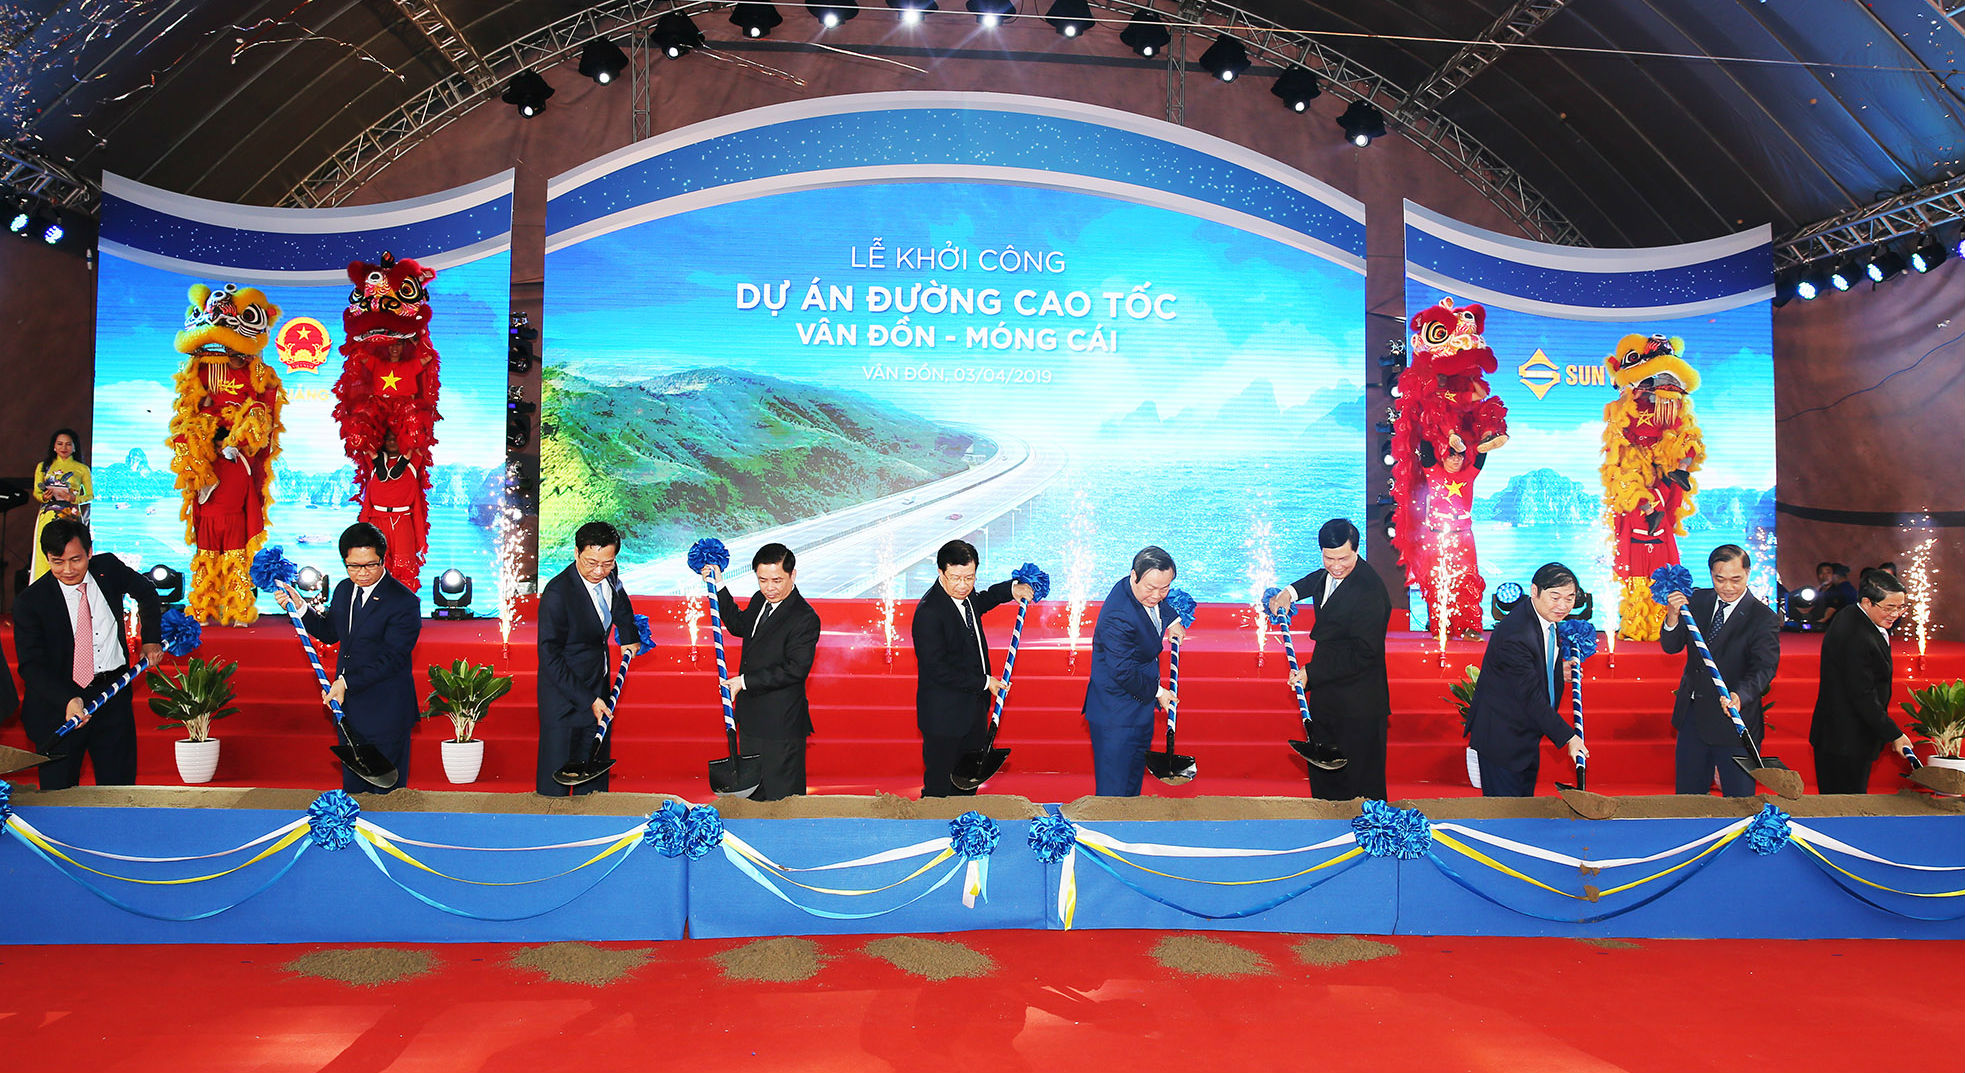 Chính thức khởi công xây dựng đường cao tốc Vân Đồn - Móng Cái.